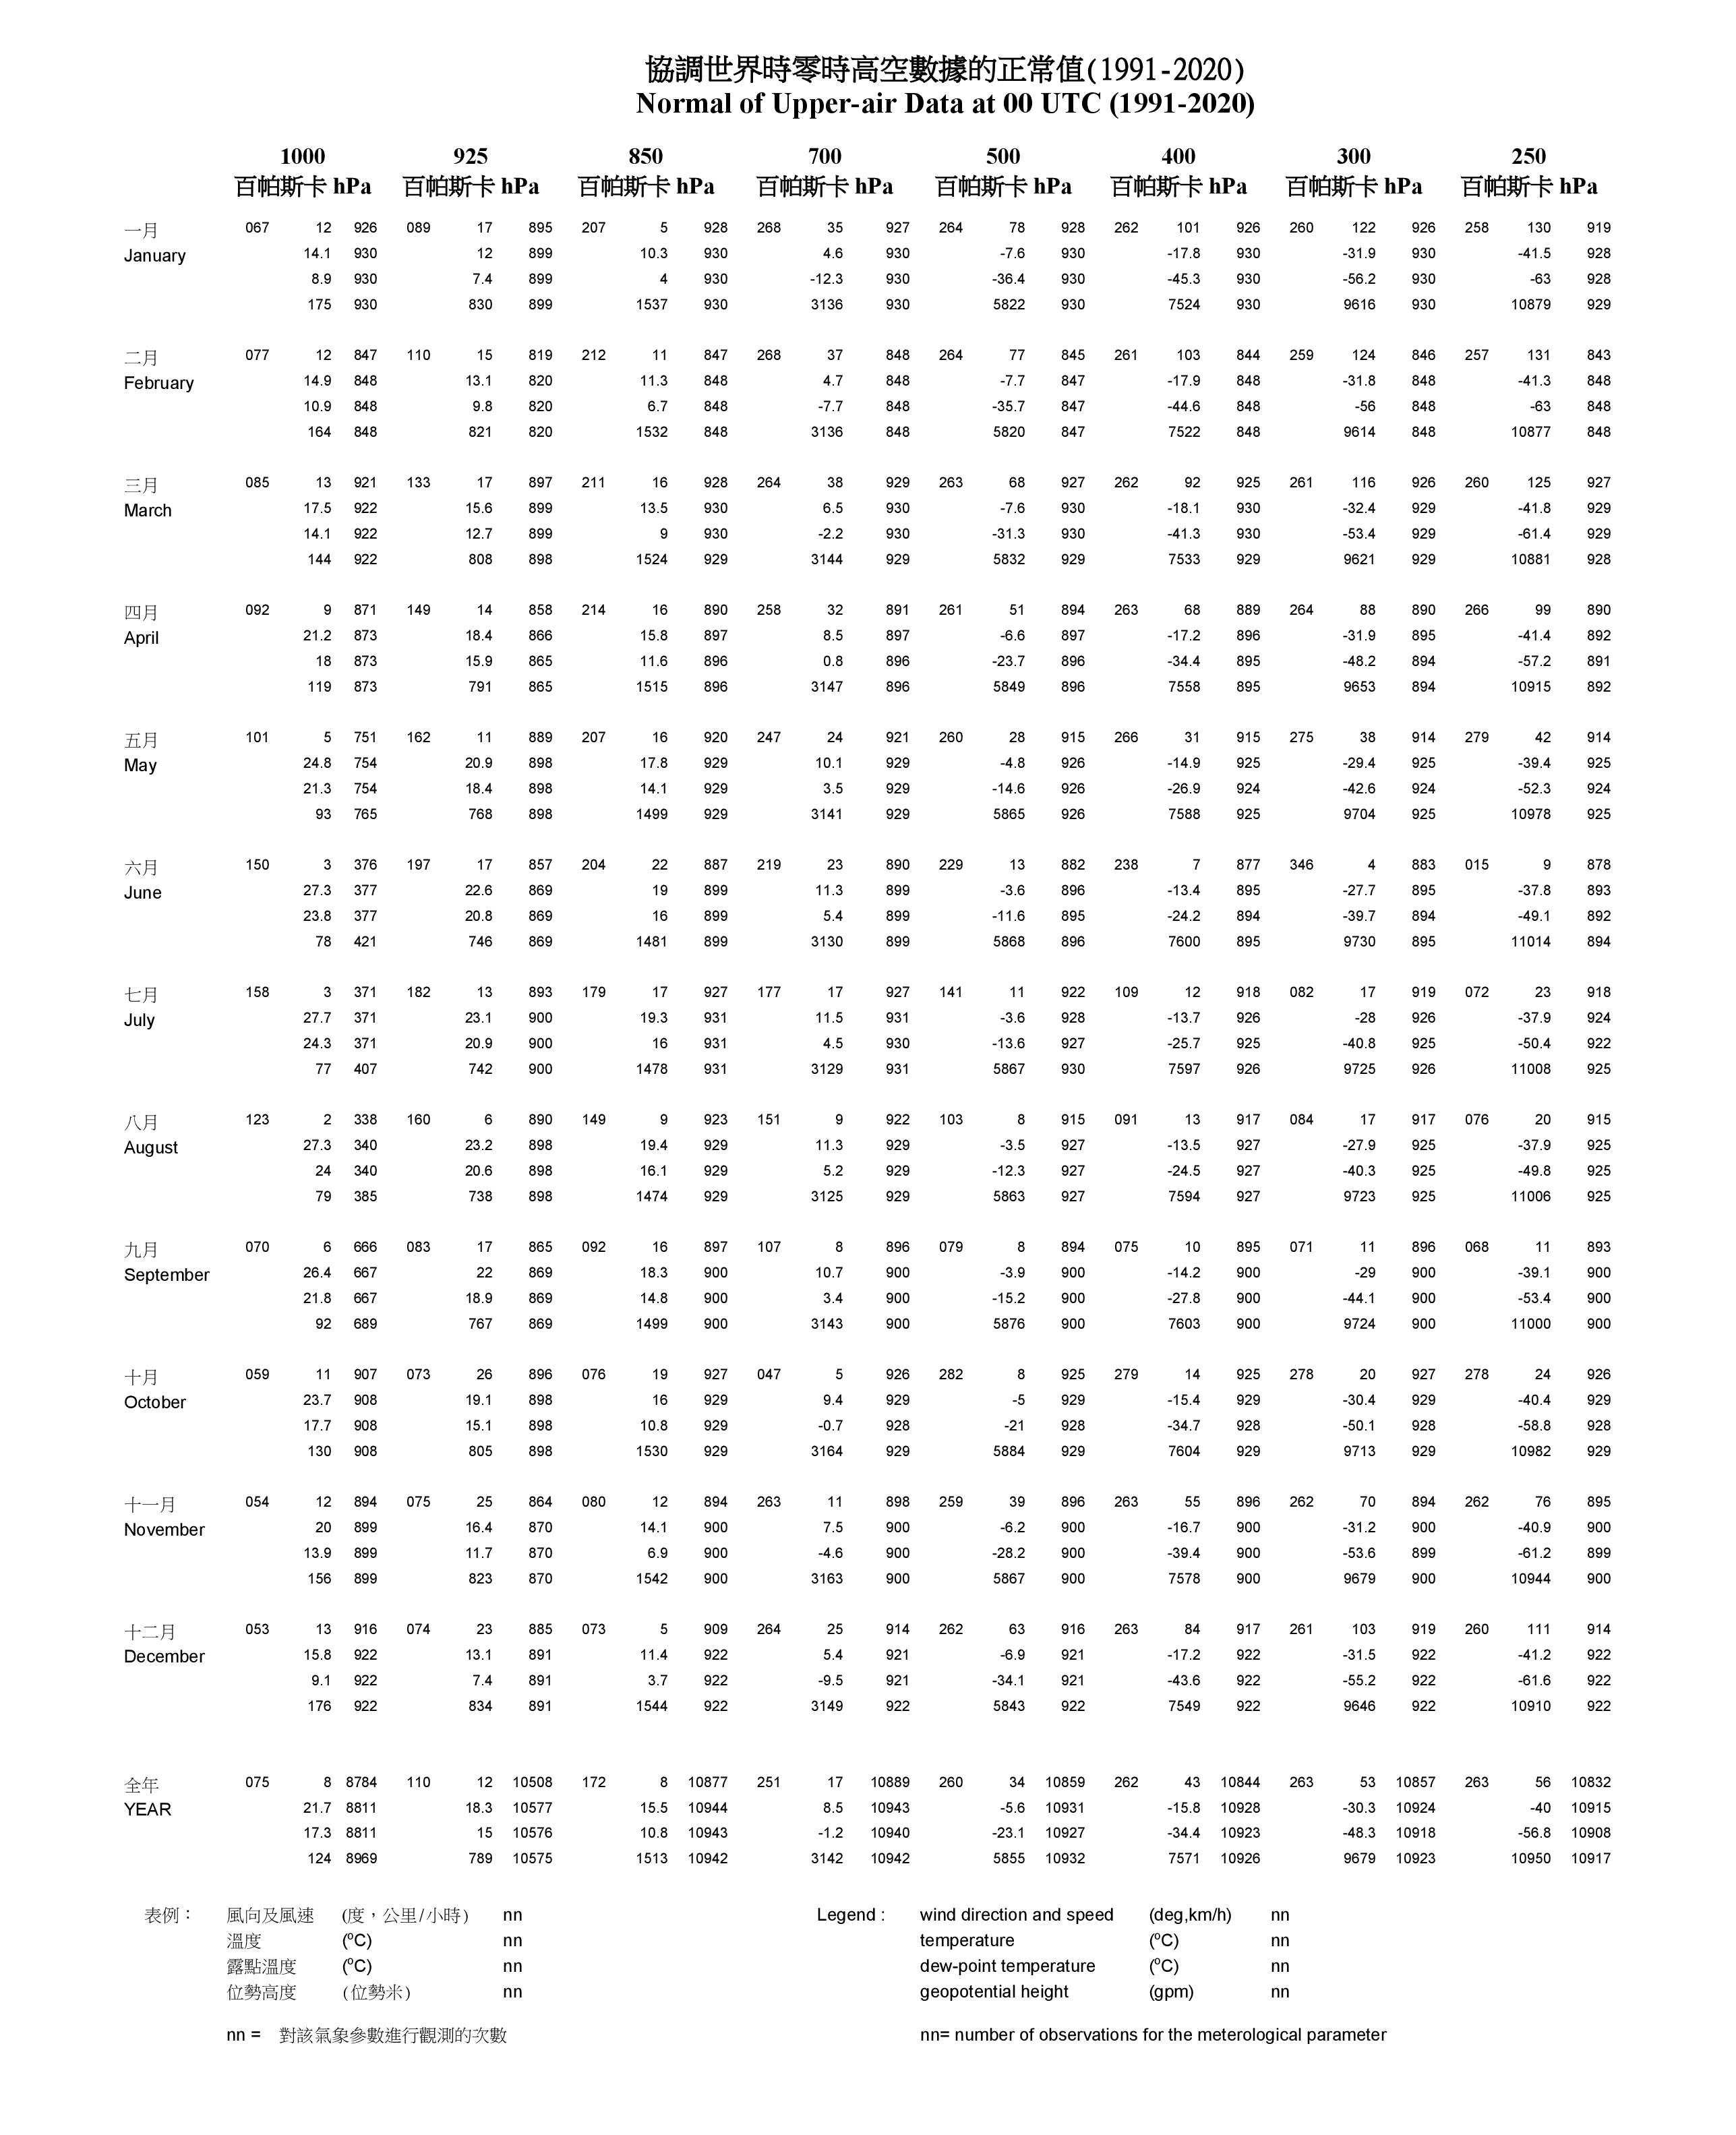 协调世界时零时高空数据的正常值(1) (1991-2020)